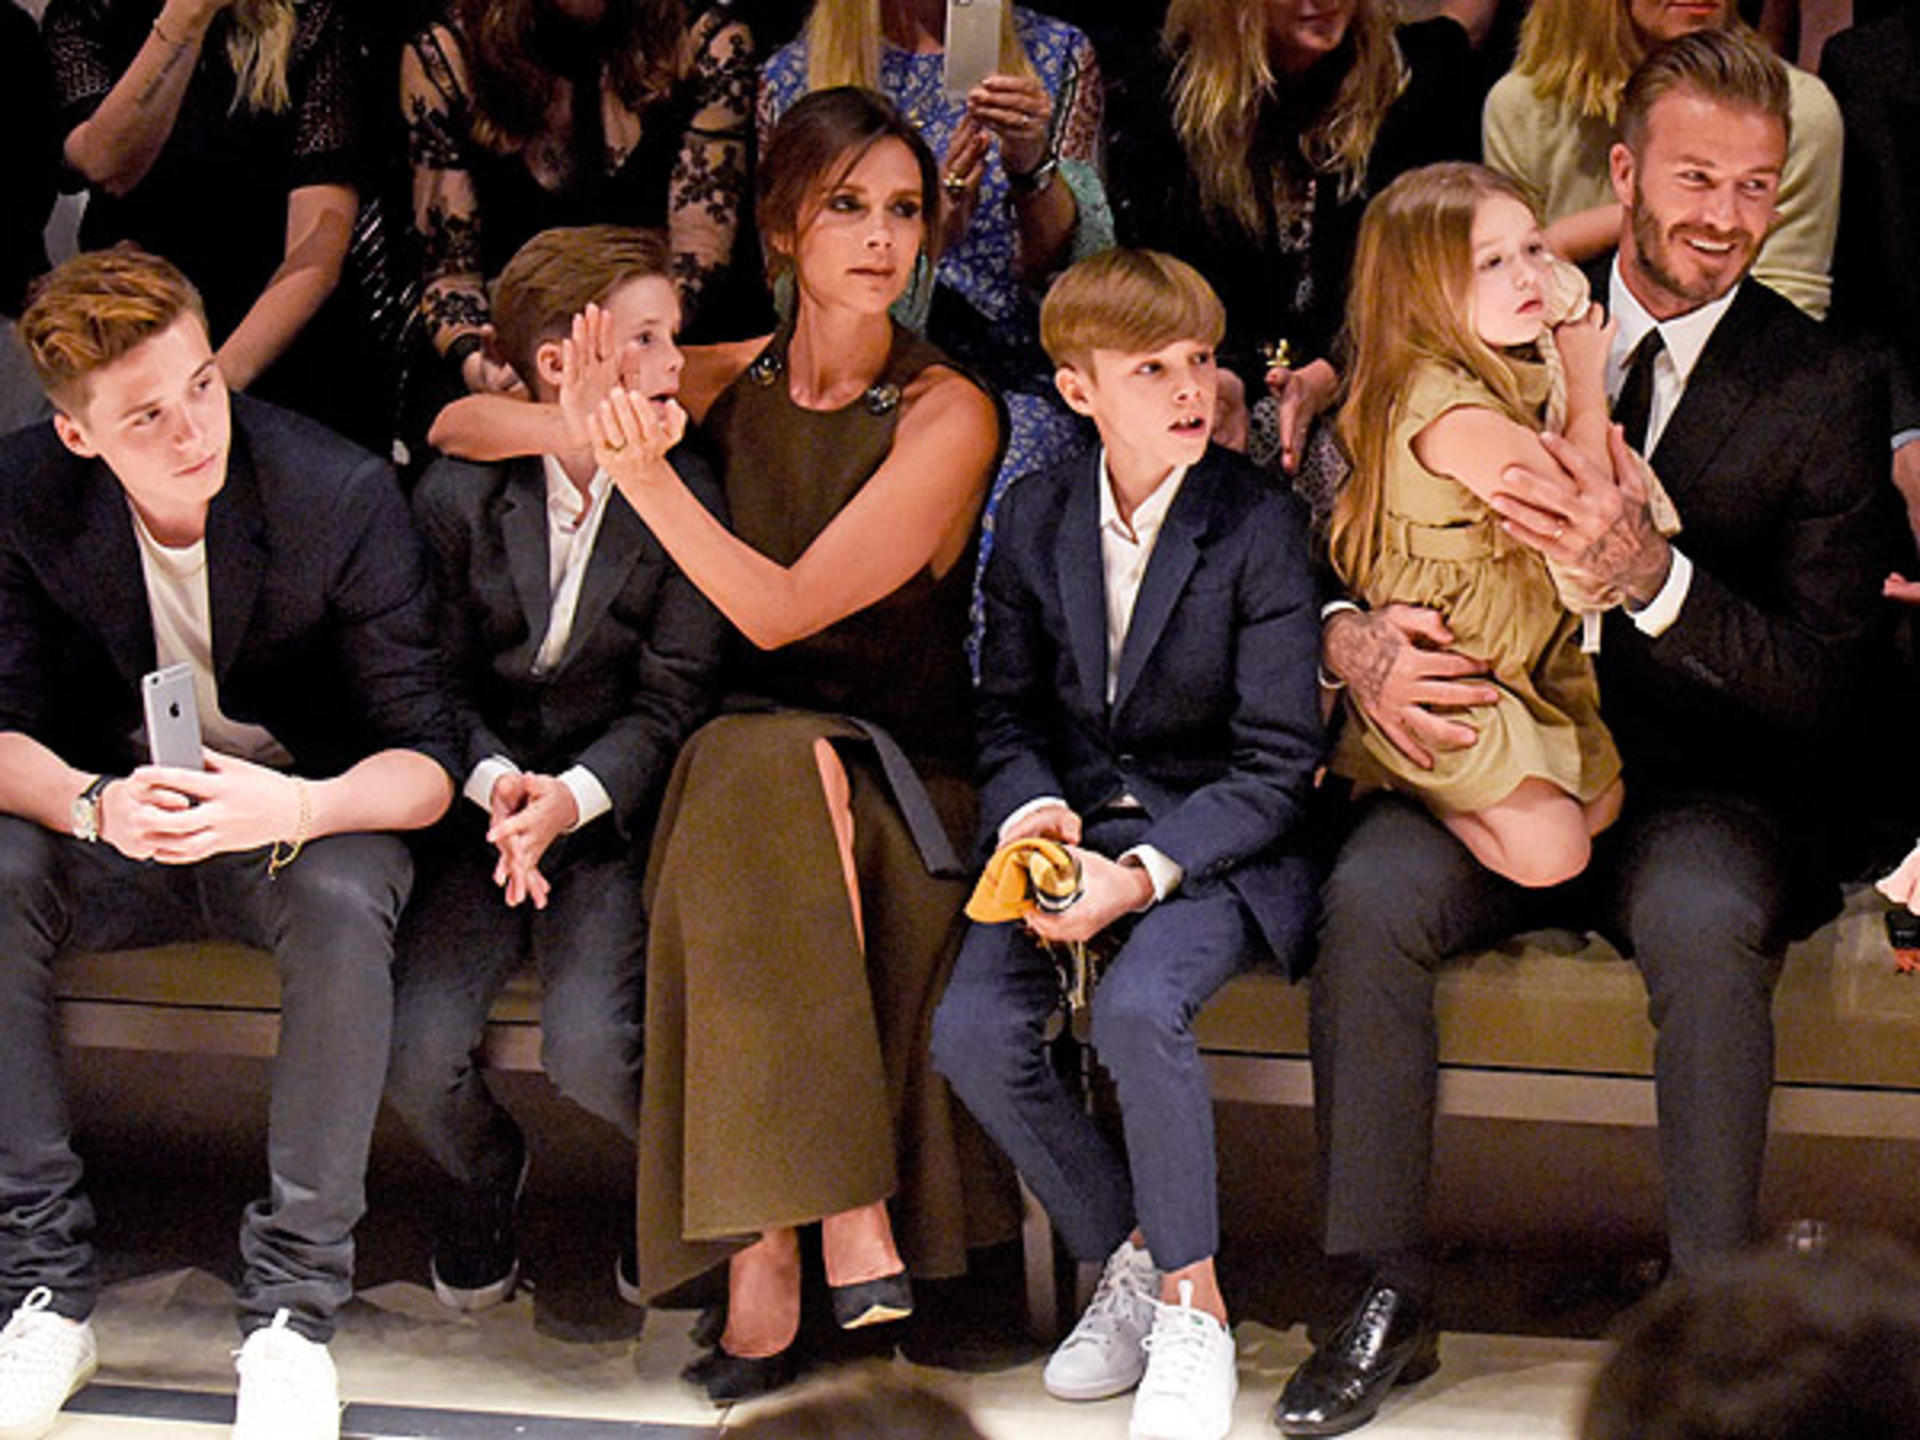 Đại gia đình Beckham tại một sự kiện thời trang - Ảnh: Getty Images